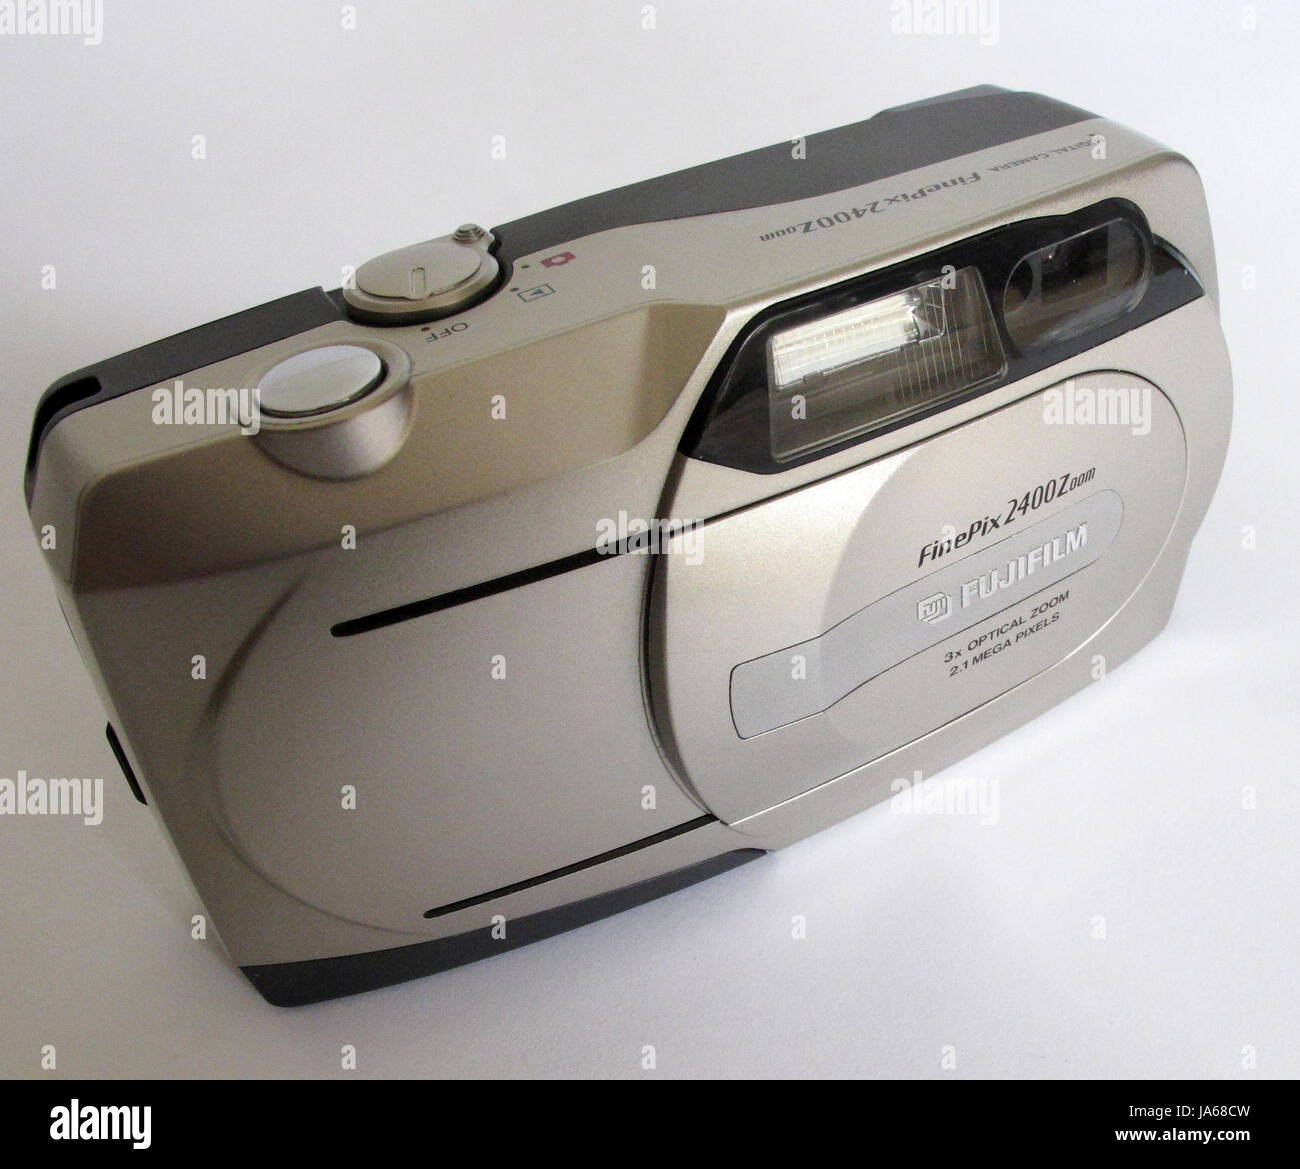 A principios de bolsillo - Cámara digital Fuji Finepix 2400Z. Cámara  digital de consumo Fotografía de stock - Alamy